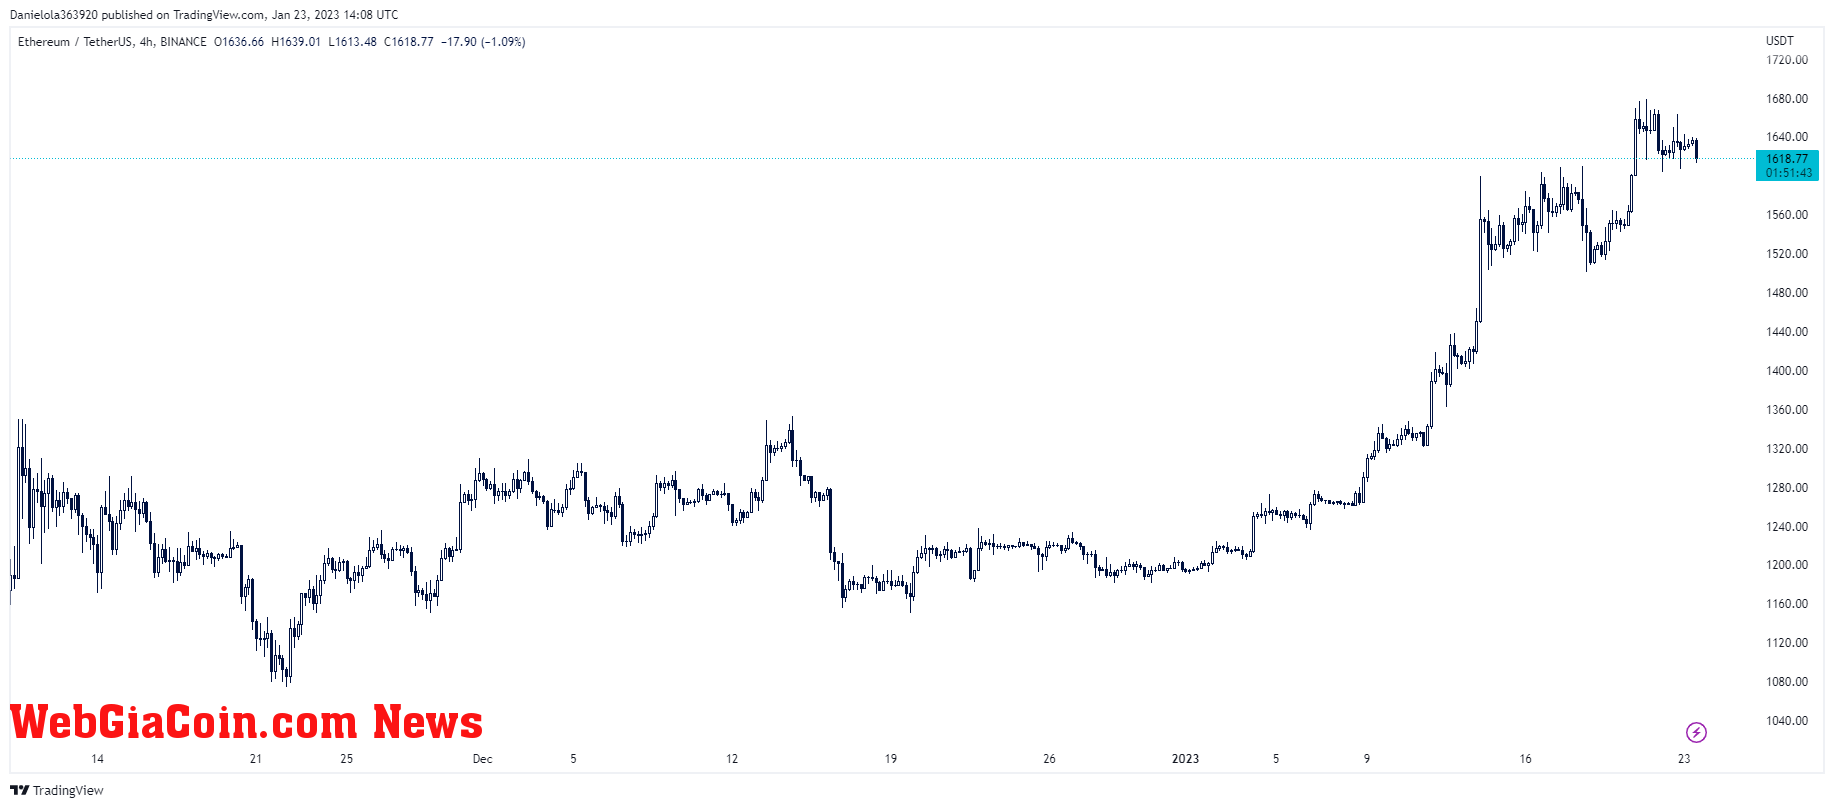 Ethereum price chart on TradingView